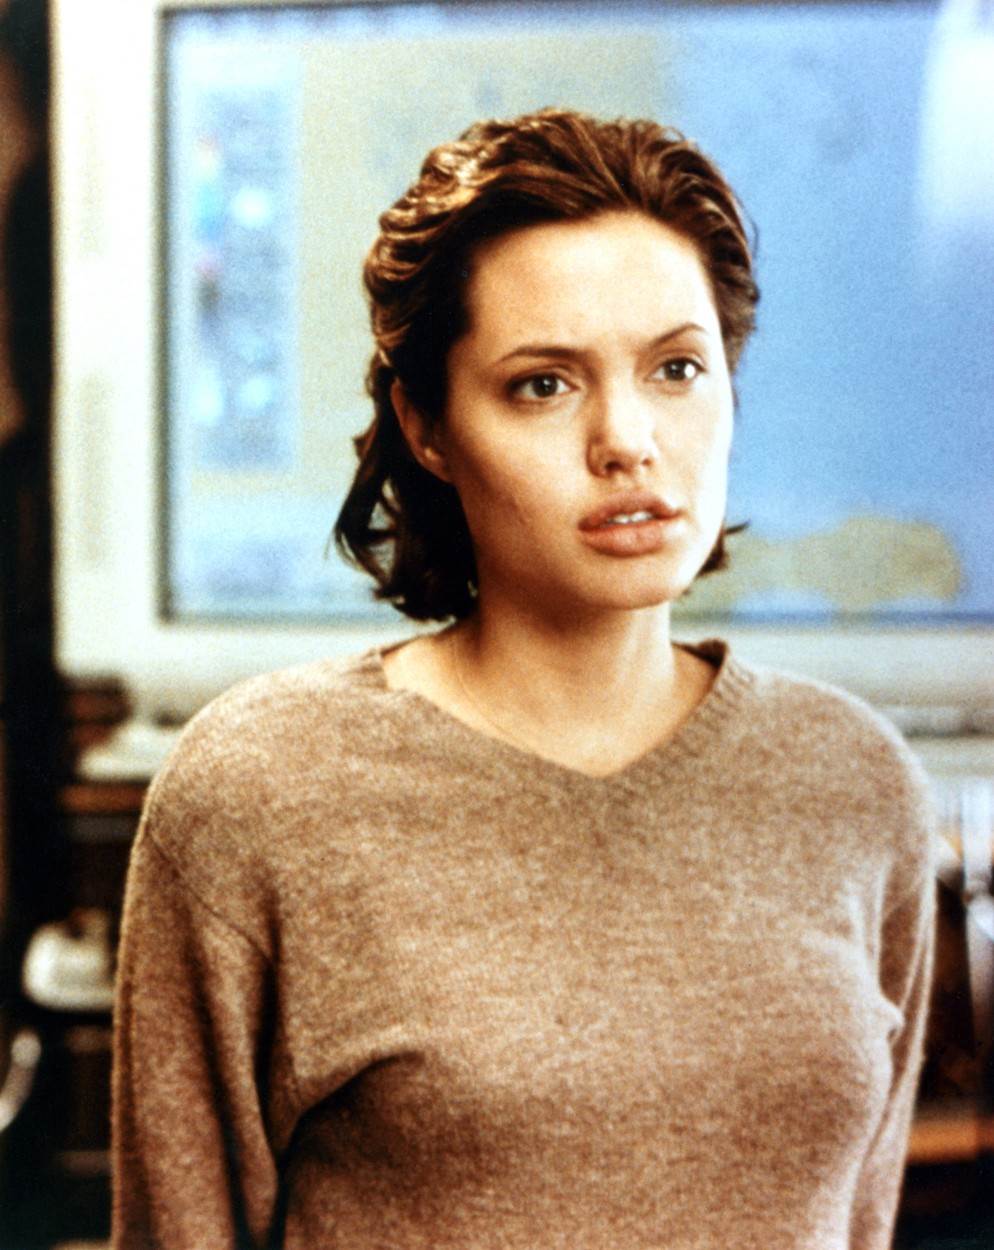 KAD BI SVI S 46 IZGLEDALI KAO ONA Angelina Jolie stari kao vino 